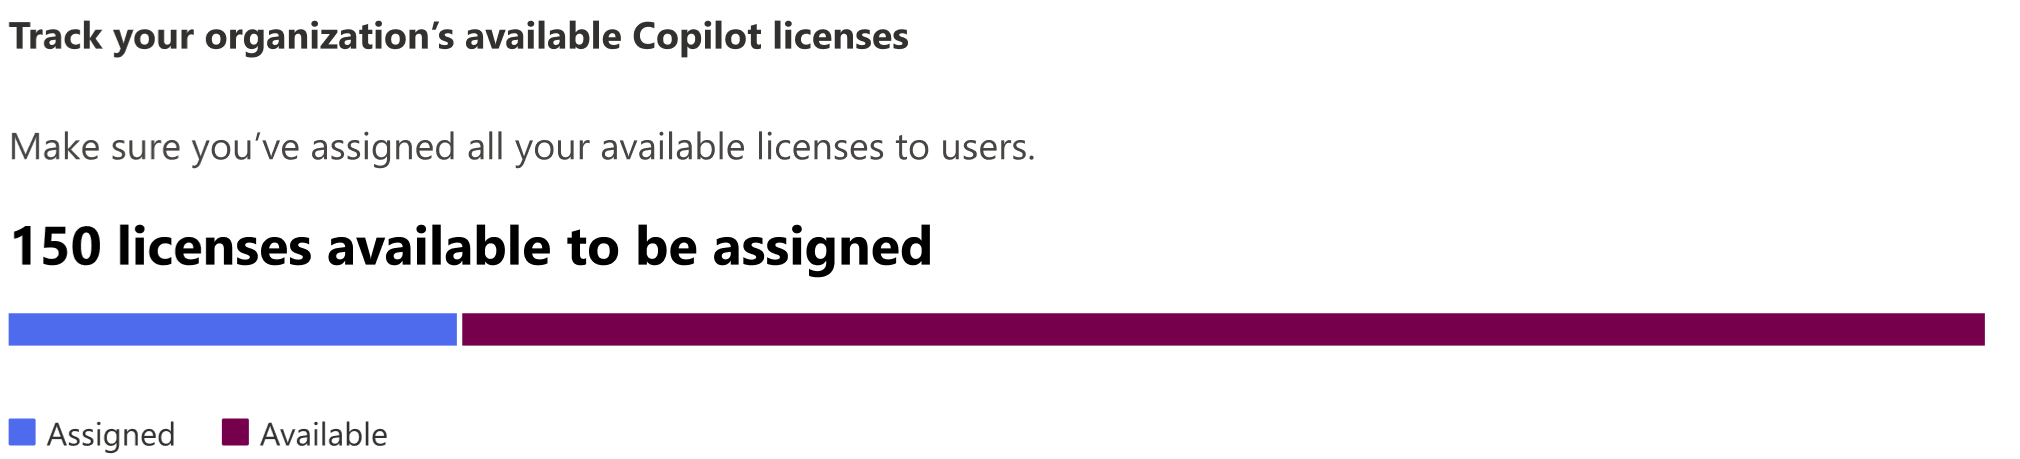 Képernyőkép egy szervezet hozzárendelhető licenceinek számáról.